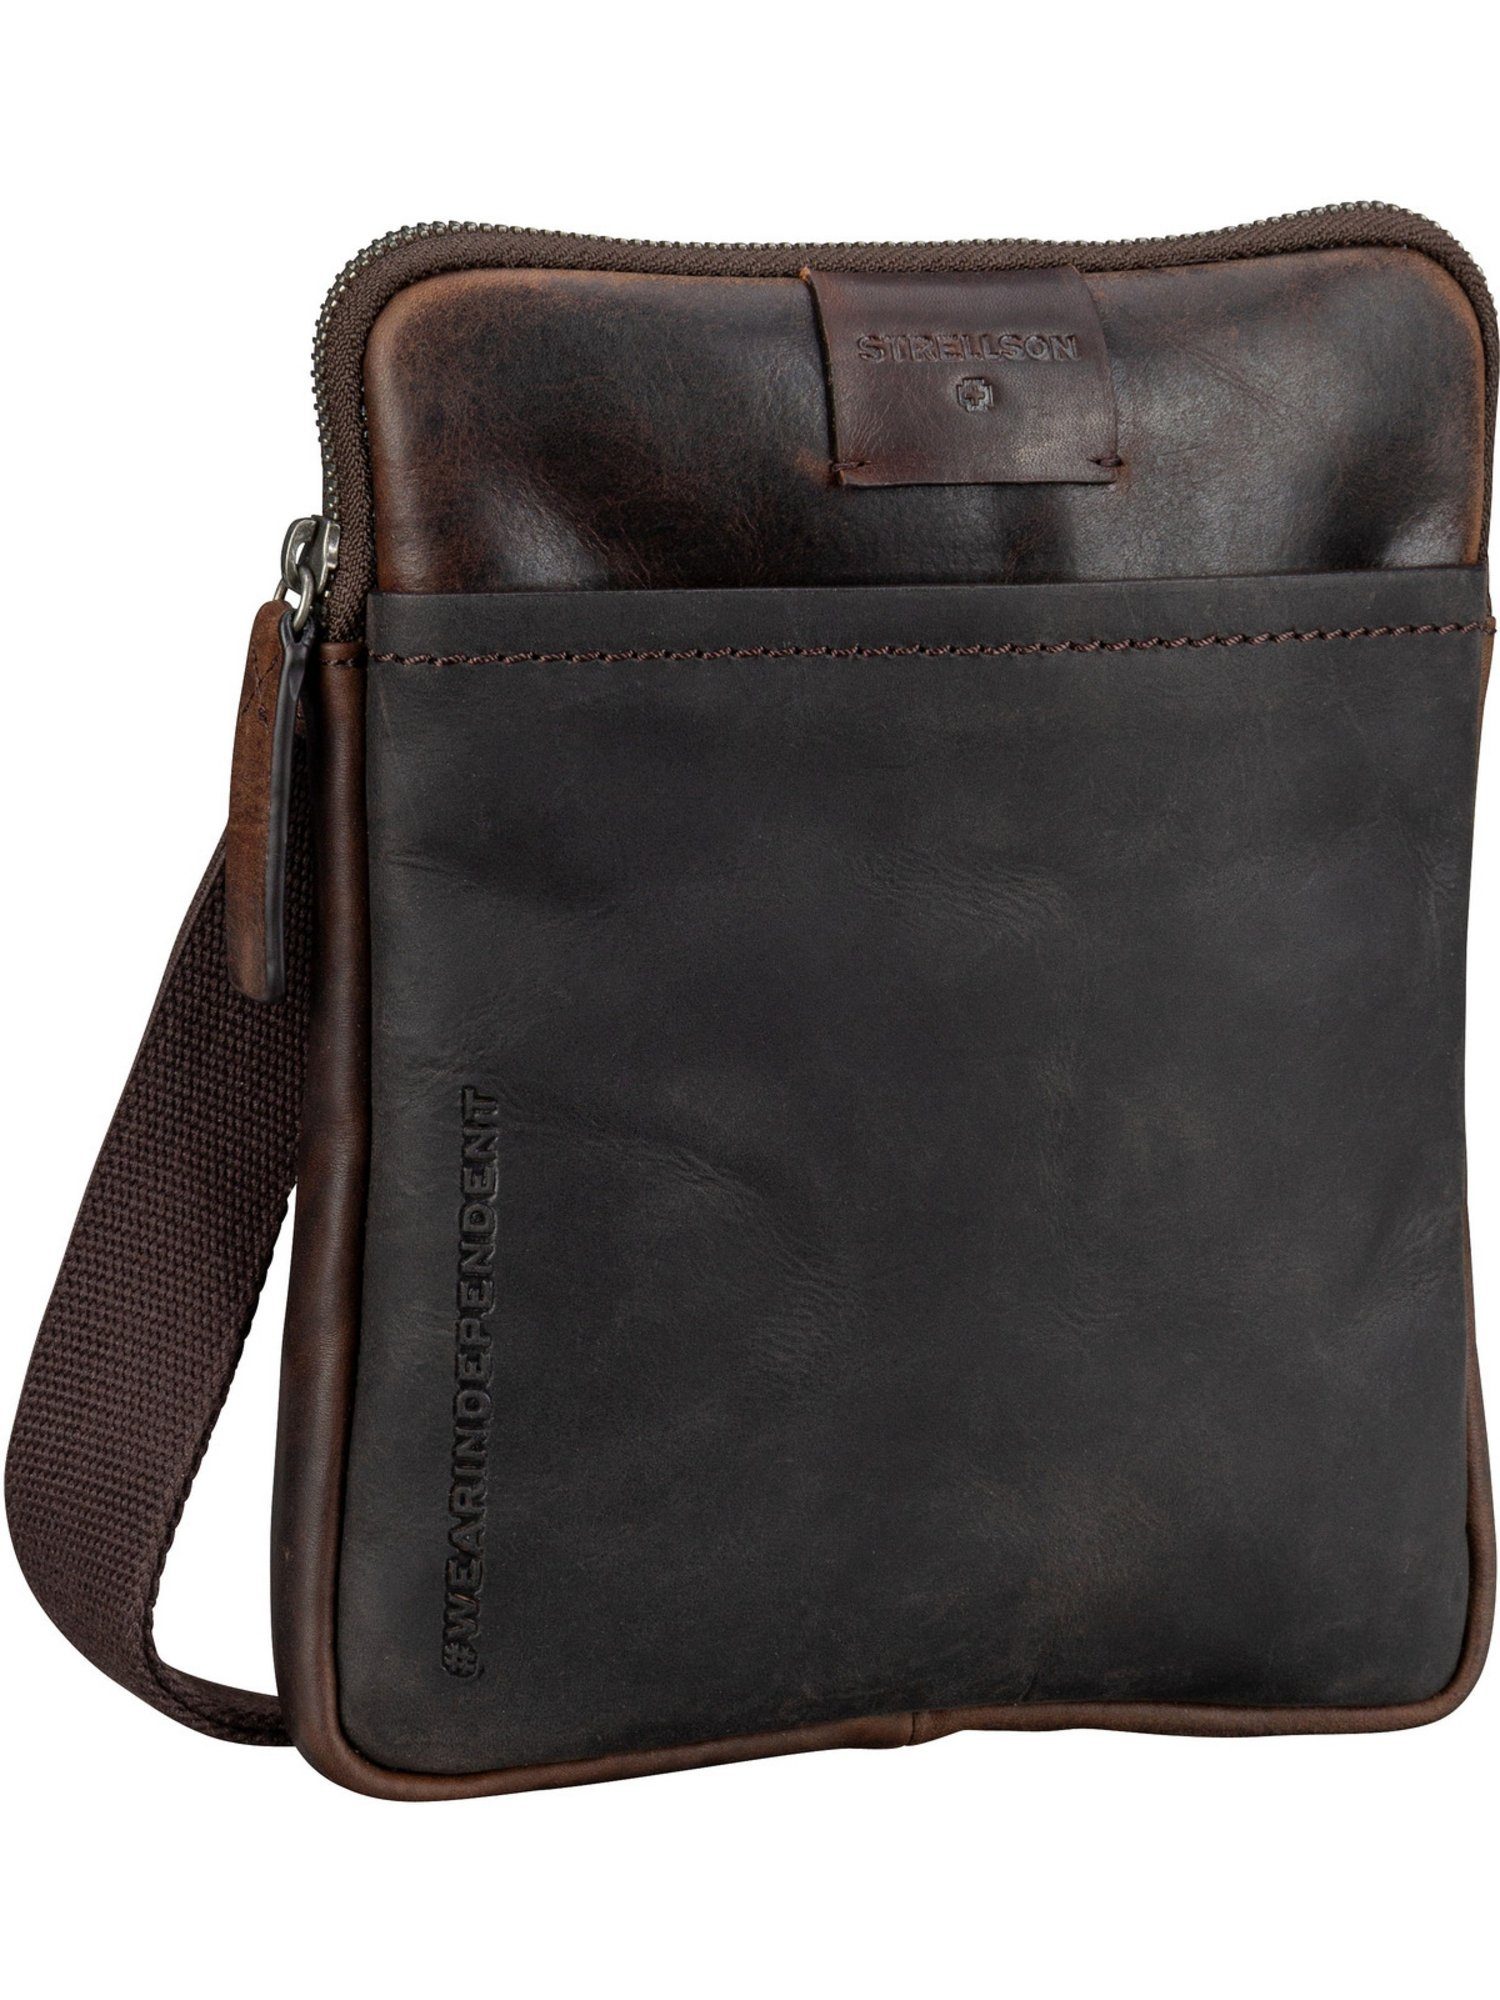 Strellson Umhängetasche Brick Lane Marcus Shoulderbag XSVZ1, Beuteltasche Dark Brown | Handtaschen